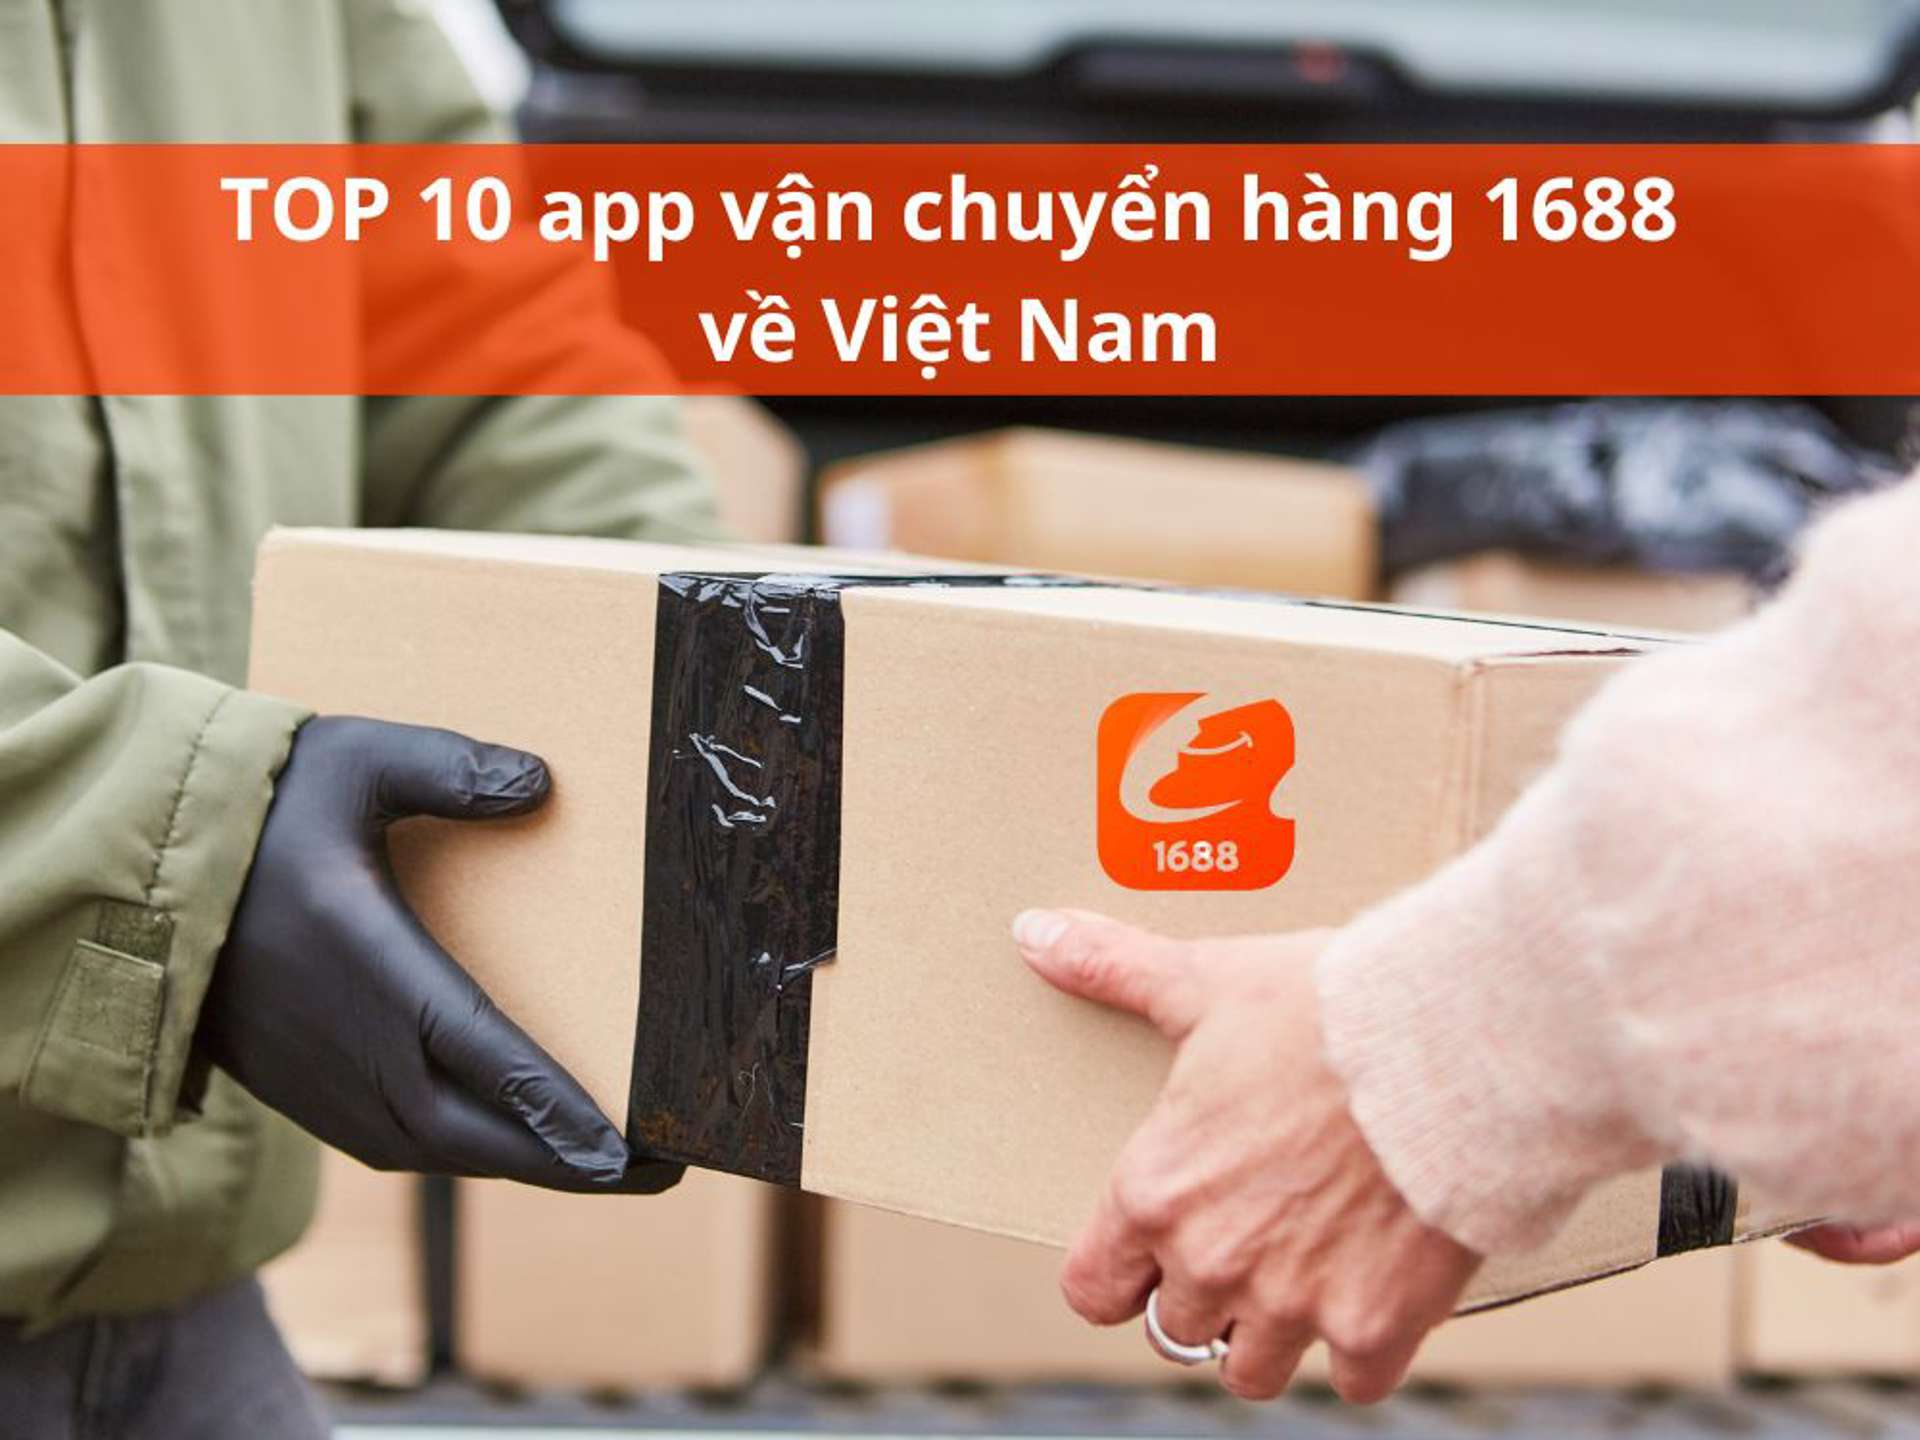 TOP 10 app vận chuyển hàng 1688 về Việt Nam uy tín, nhanh gọn